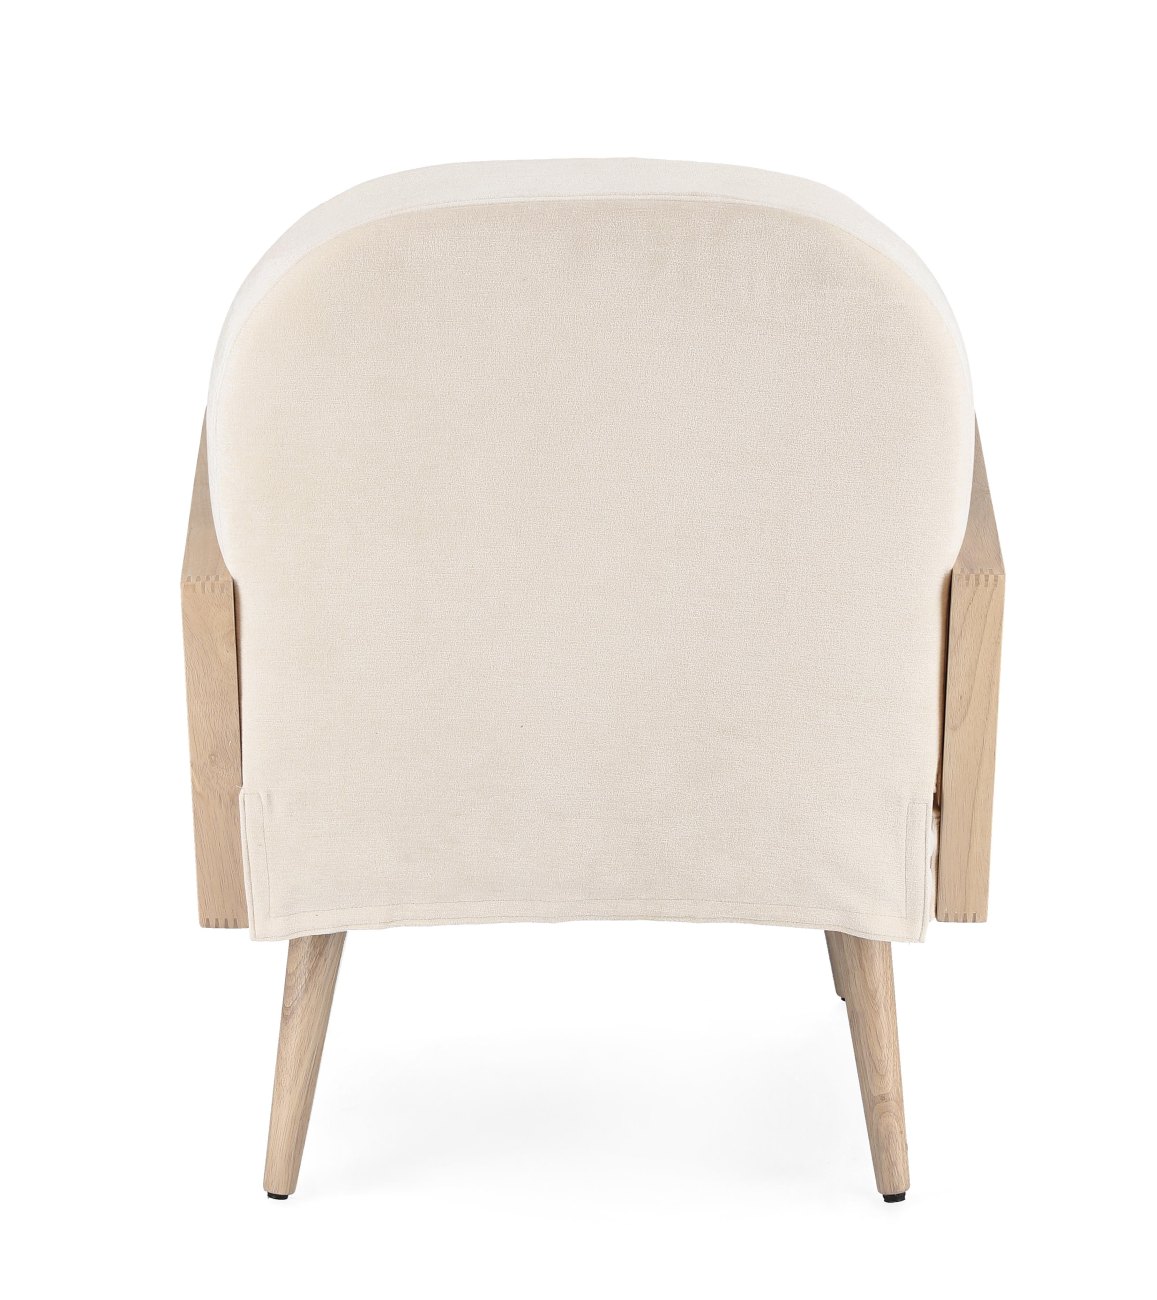 Der Sessel Dalida überzeugt mit seinem modernen Stil. Gefertigt wurde er aus einem Stoff-Bezug, welcher einen Creme Farbton besitzt. Das Gestell ist aus Kautschukholz und hat eine natürliche Farbe. Der Sessel verfügt über eine Armlehne.